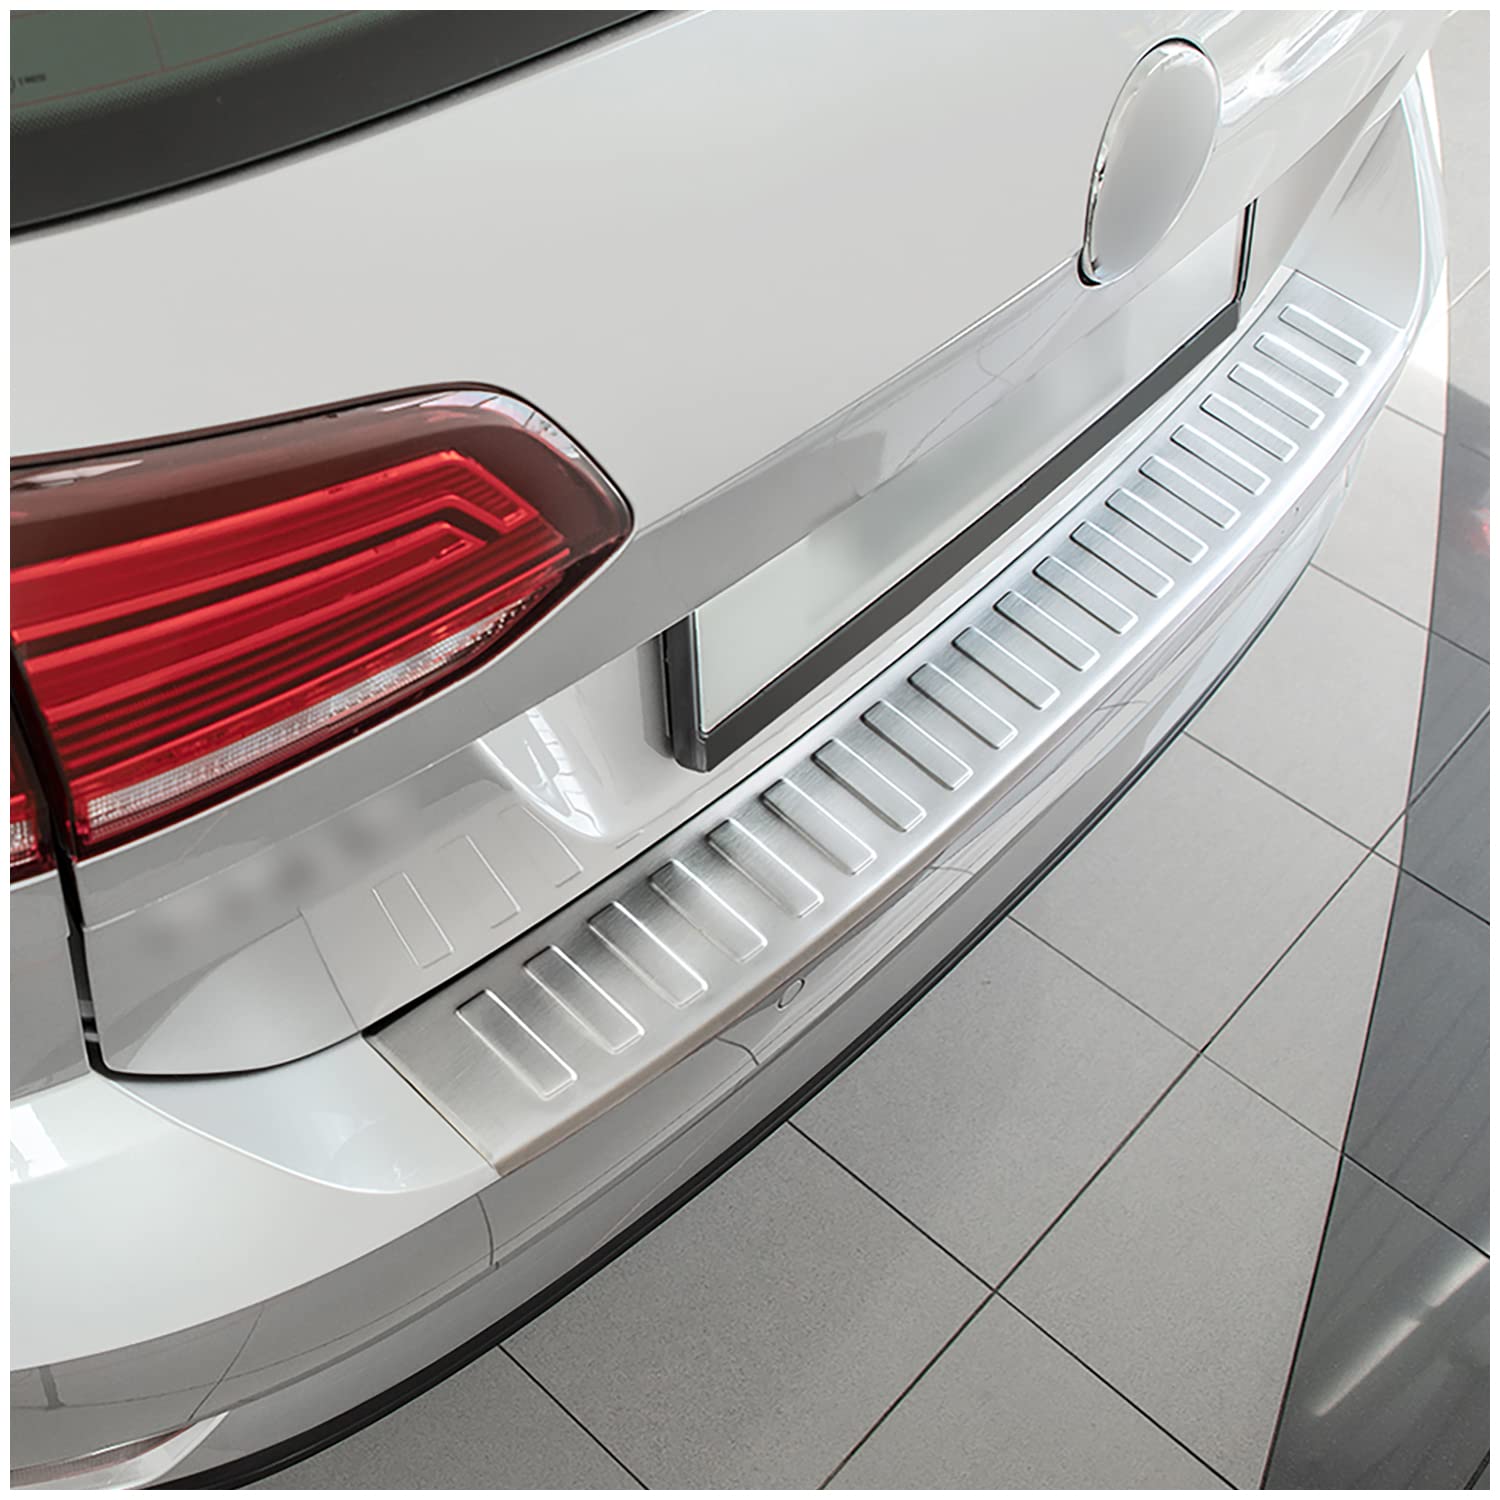 teileplus24 L636 Ladekantenschutz V2A Edelstahl kompatibel mit VW Golf 7 Variant 2017-2021 Abkantung, Farbe:Silber gebürstet von teileplus24